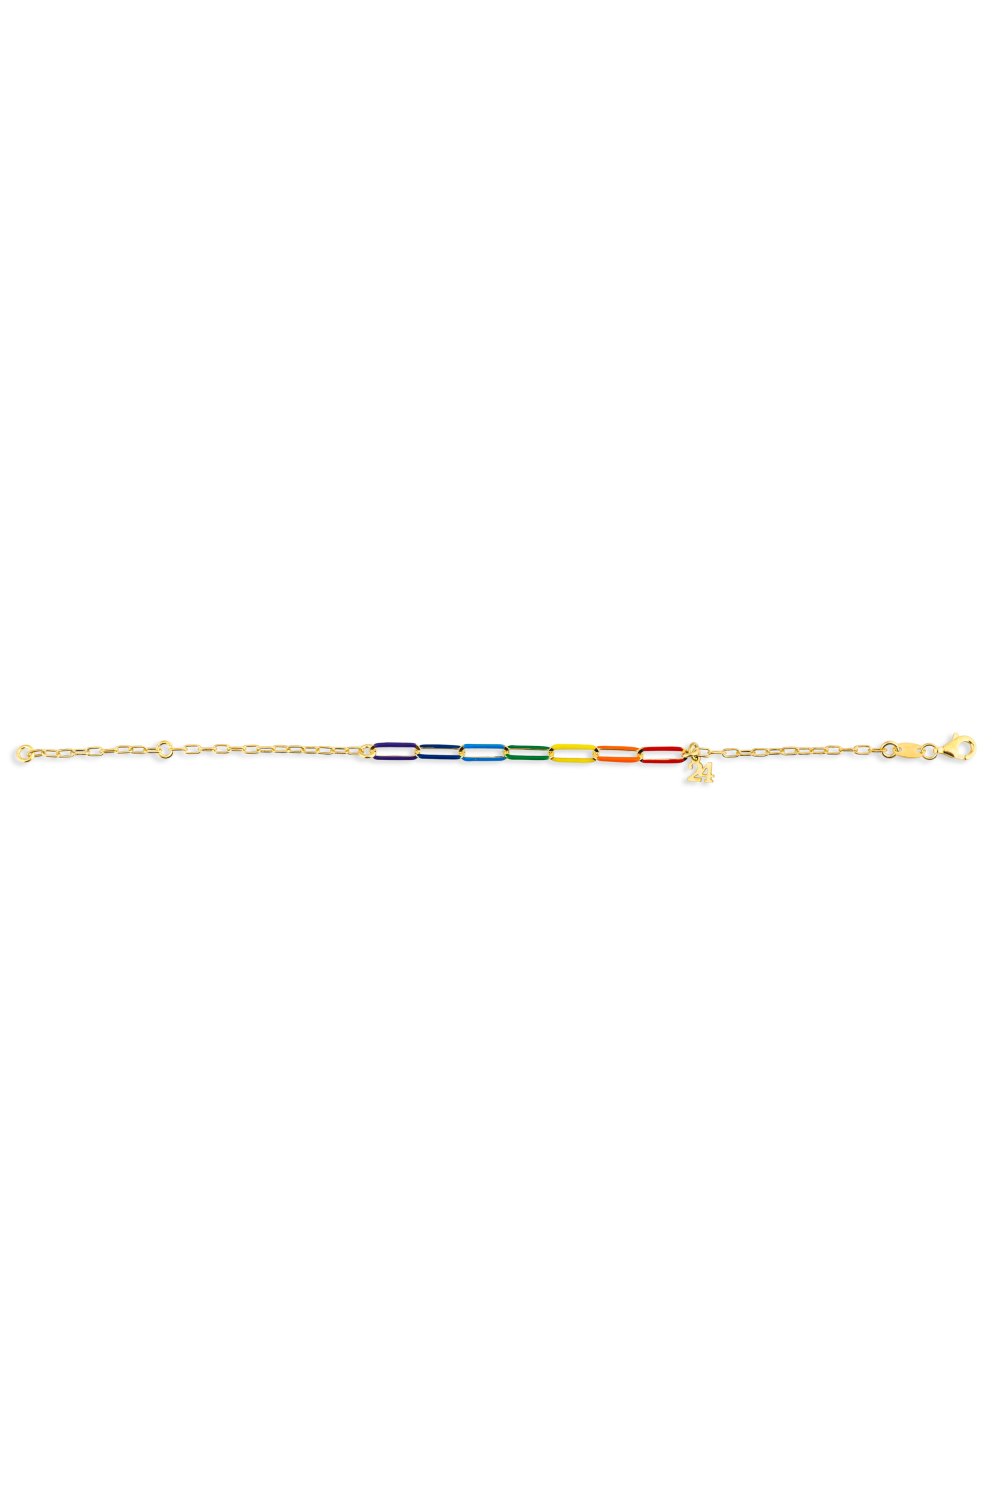 KESSARIS - Lucky Charm 24 Rainbow Links Silver Bracelet